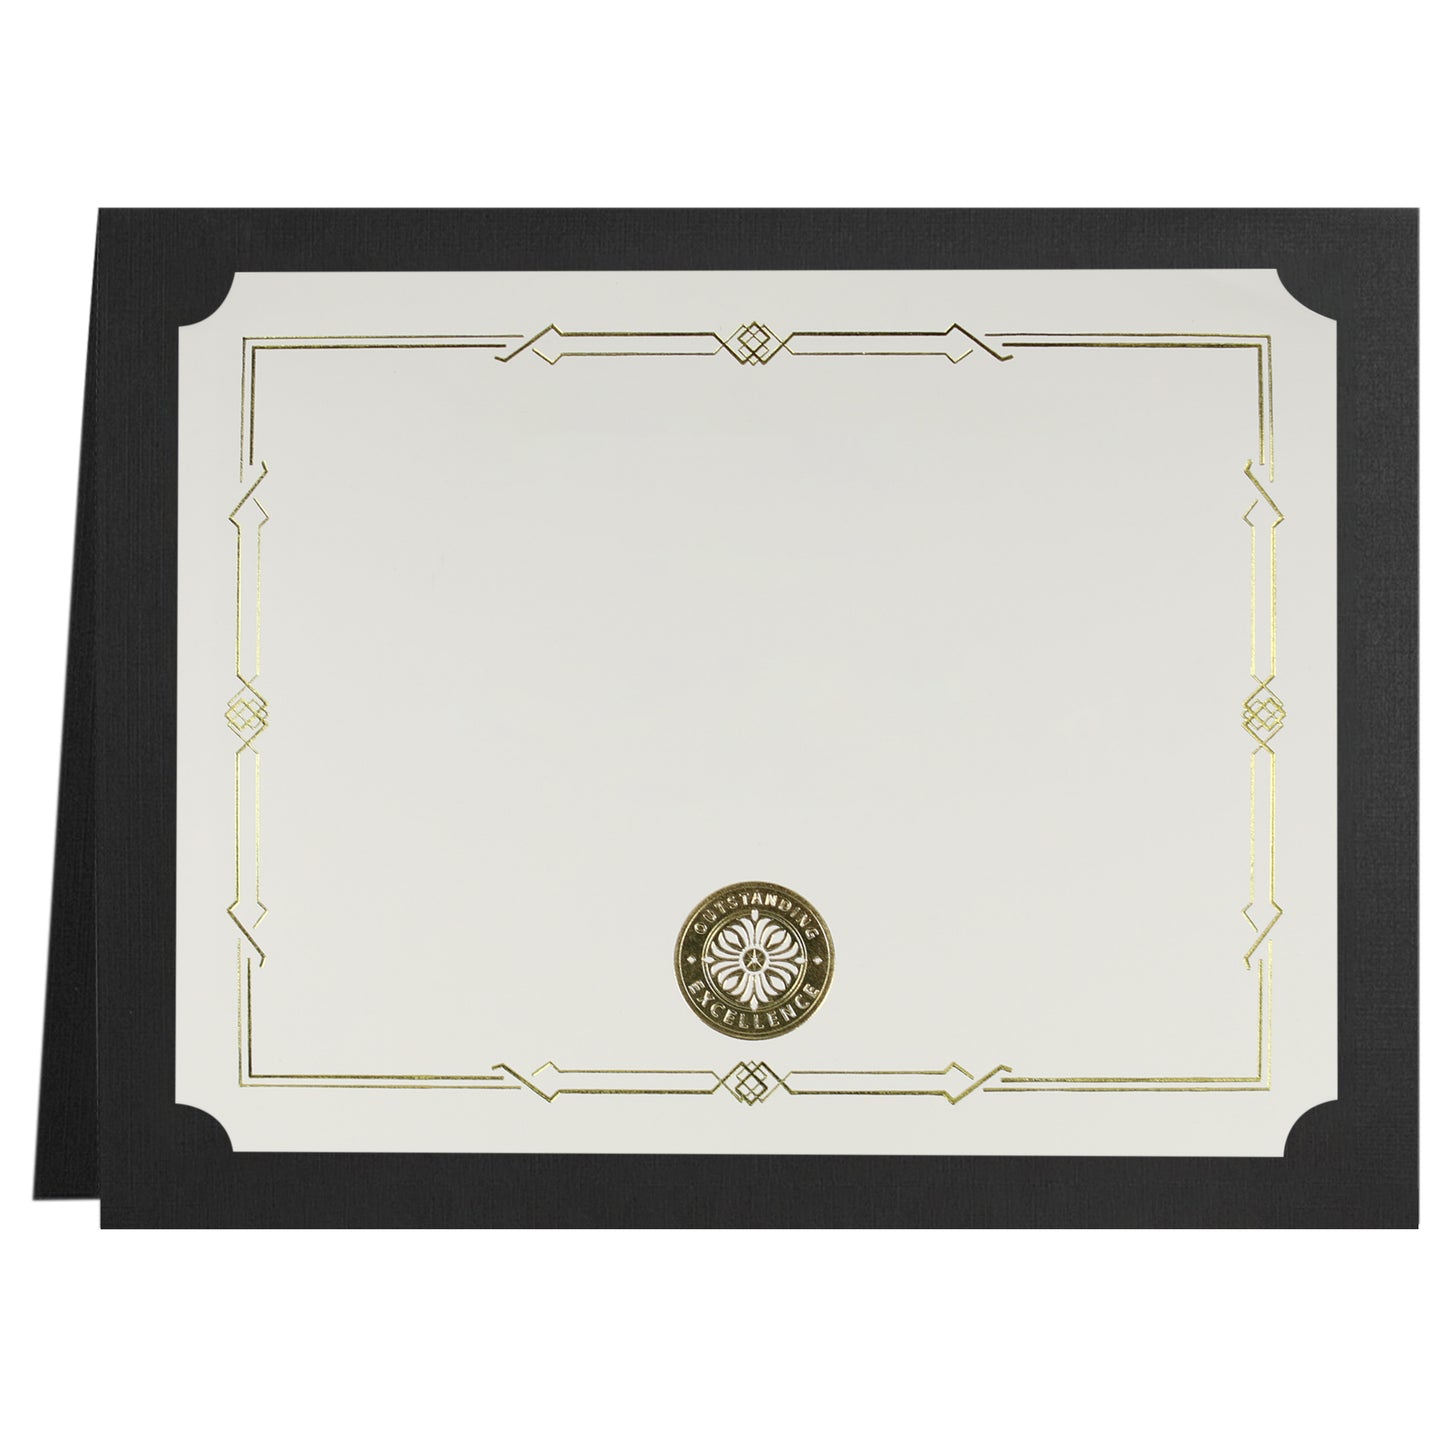 St. James® Porte-certificats/Couvertures de documents/Porte-diplômes, Noir, Bordure en feuille d'or, Finition lin, Paquet de 5, 83802